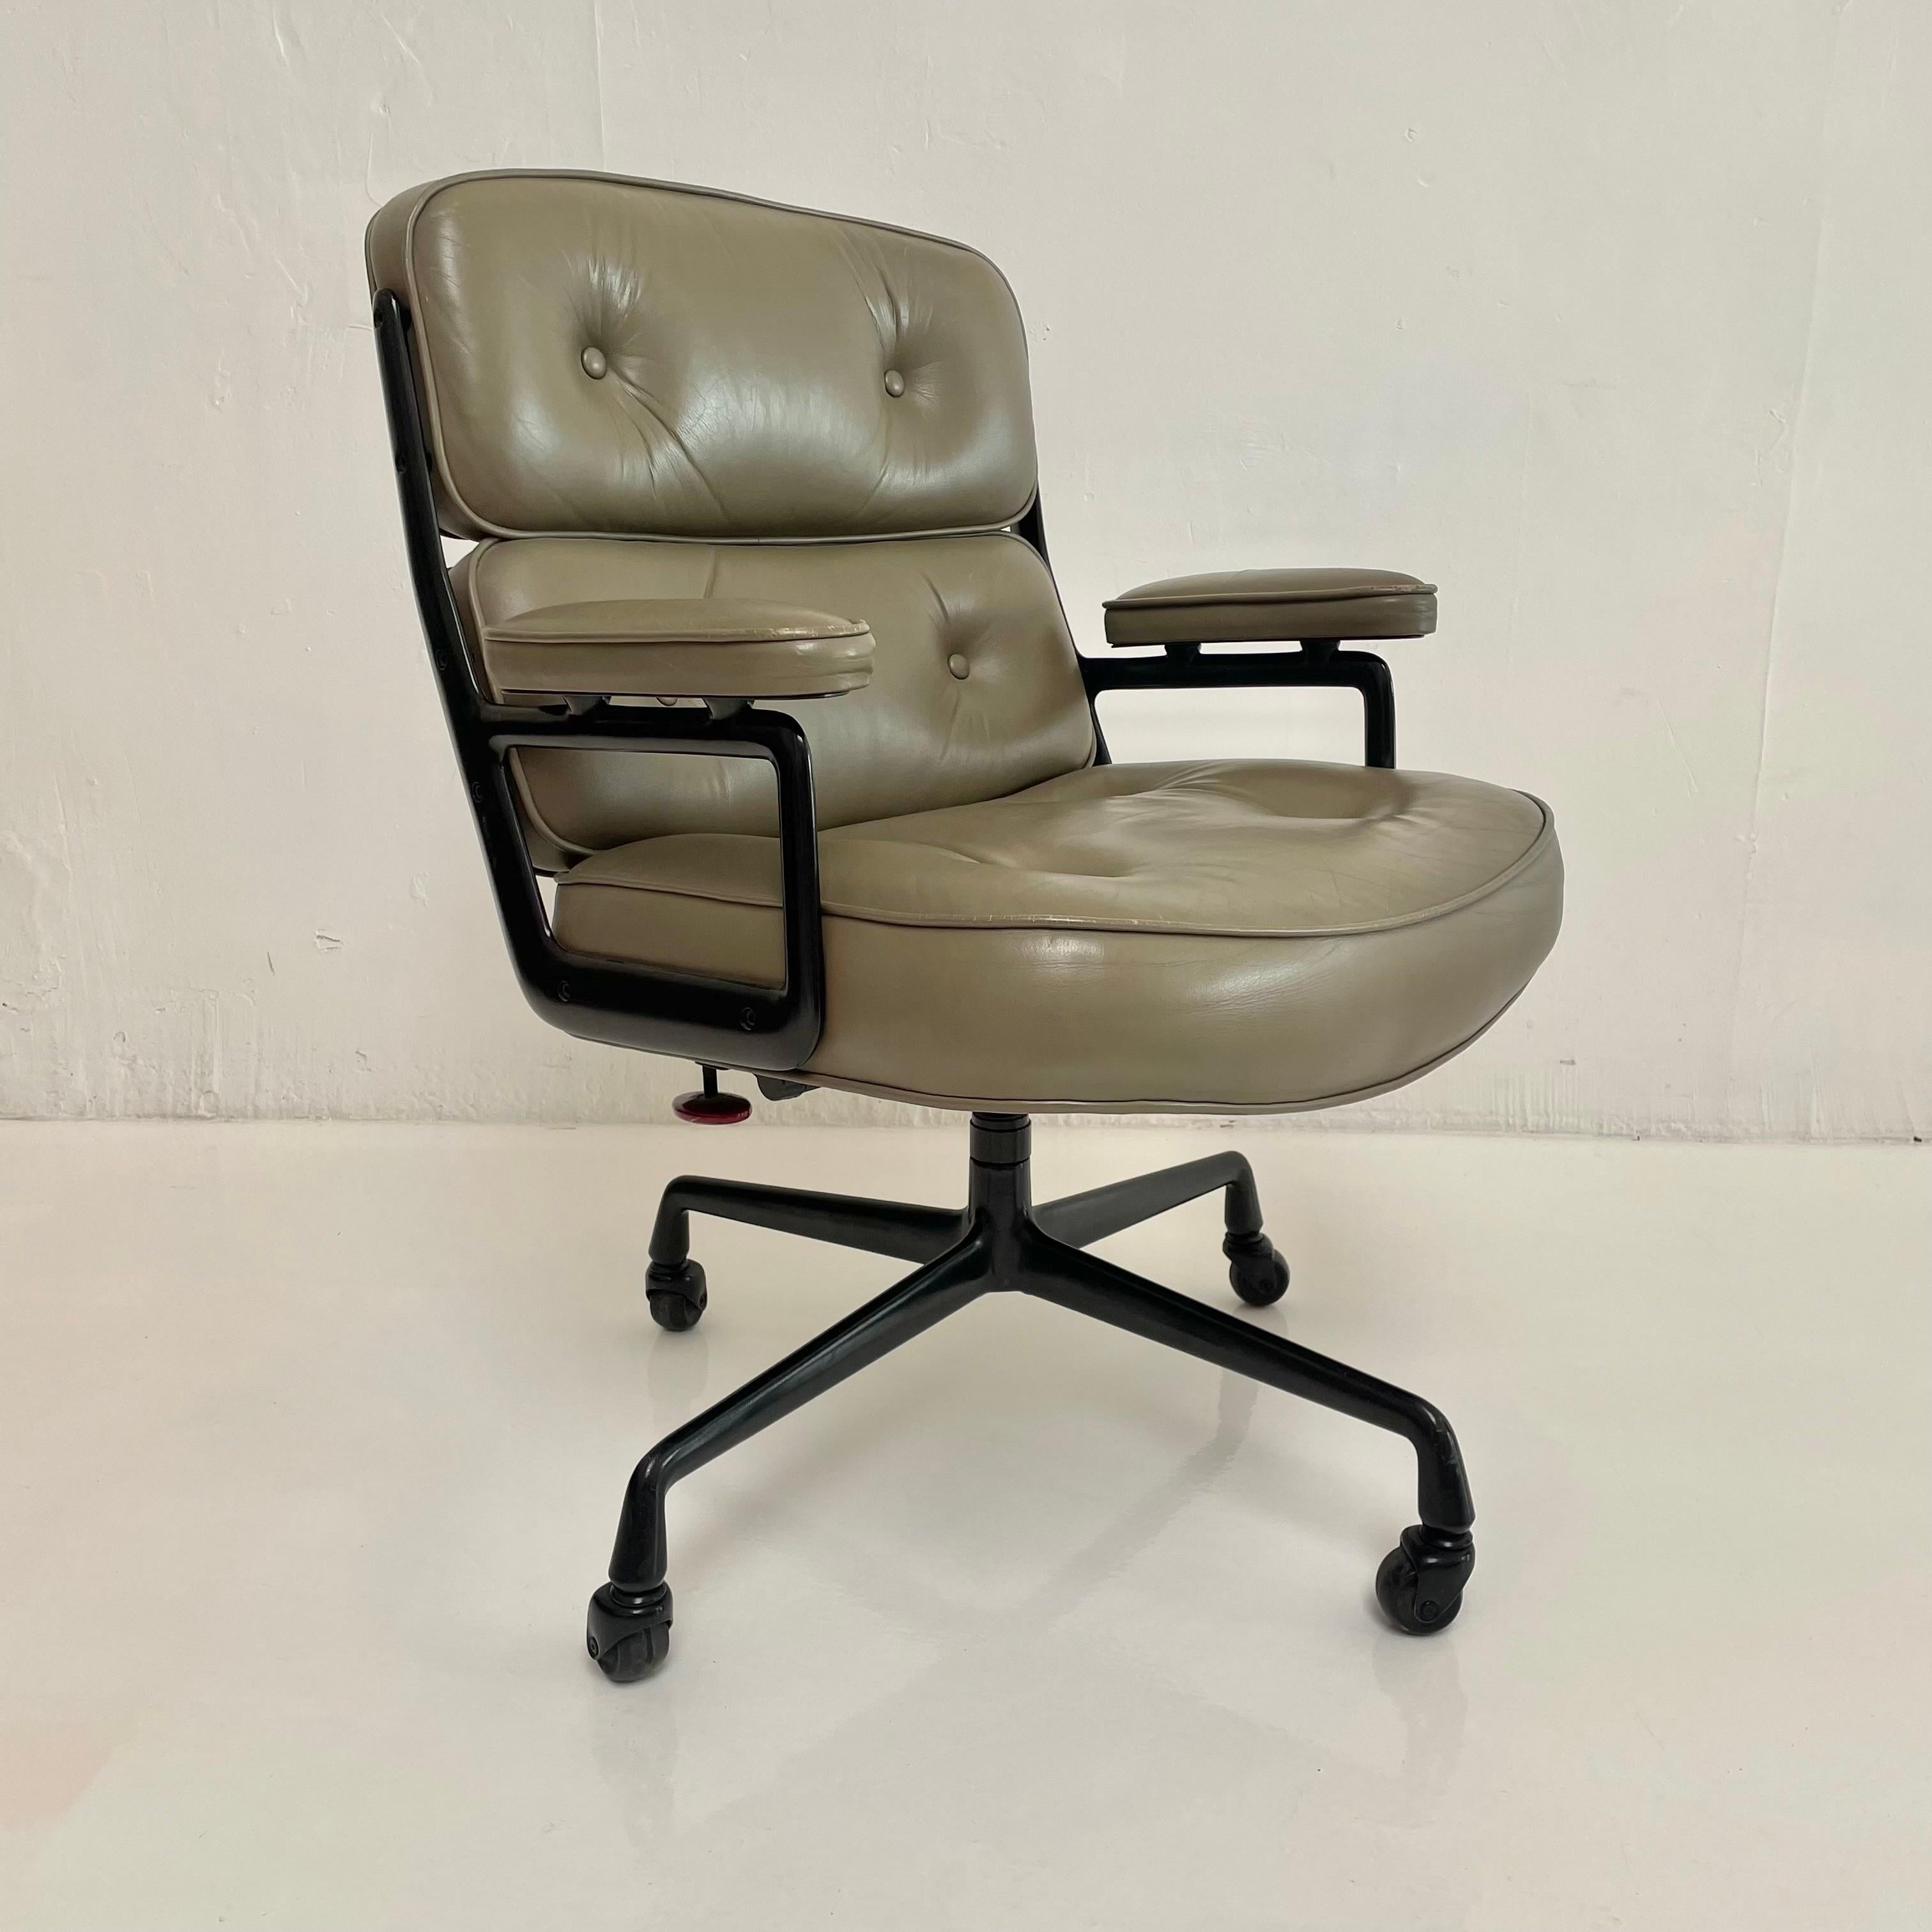 Klassischer Eames Time Life Chair in olivgrünem Leder für Herman Miller, ca. 1984. Olivfarbenes Leder mit Gebrauchsspuren wie abgebildet. Äußerst bequem und eingearbeitet. Der Stuhl ist drehbar und neigbar. Die Höhe ist einstellbar. Selten gesehener